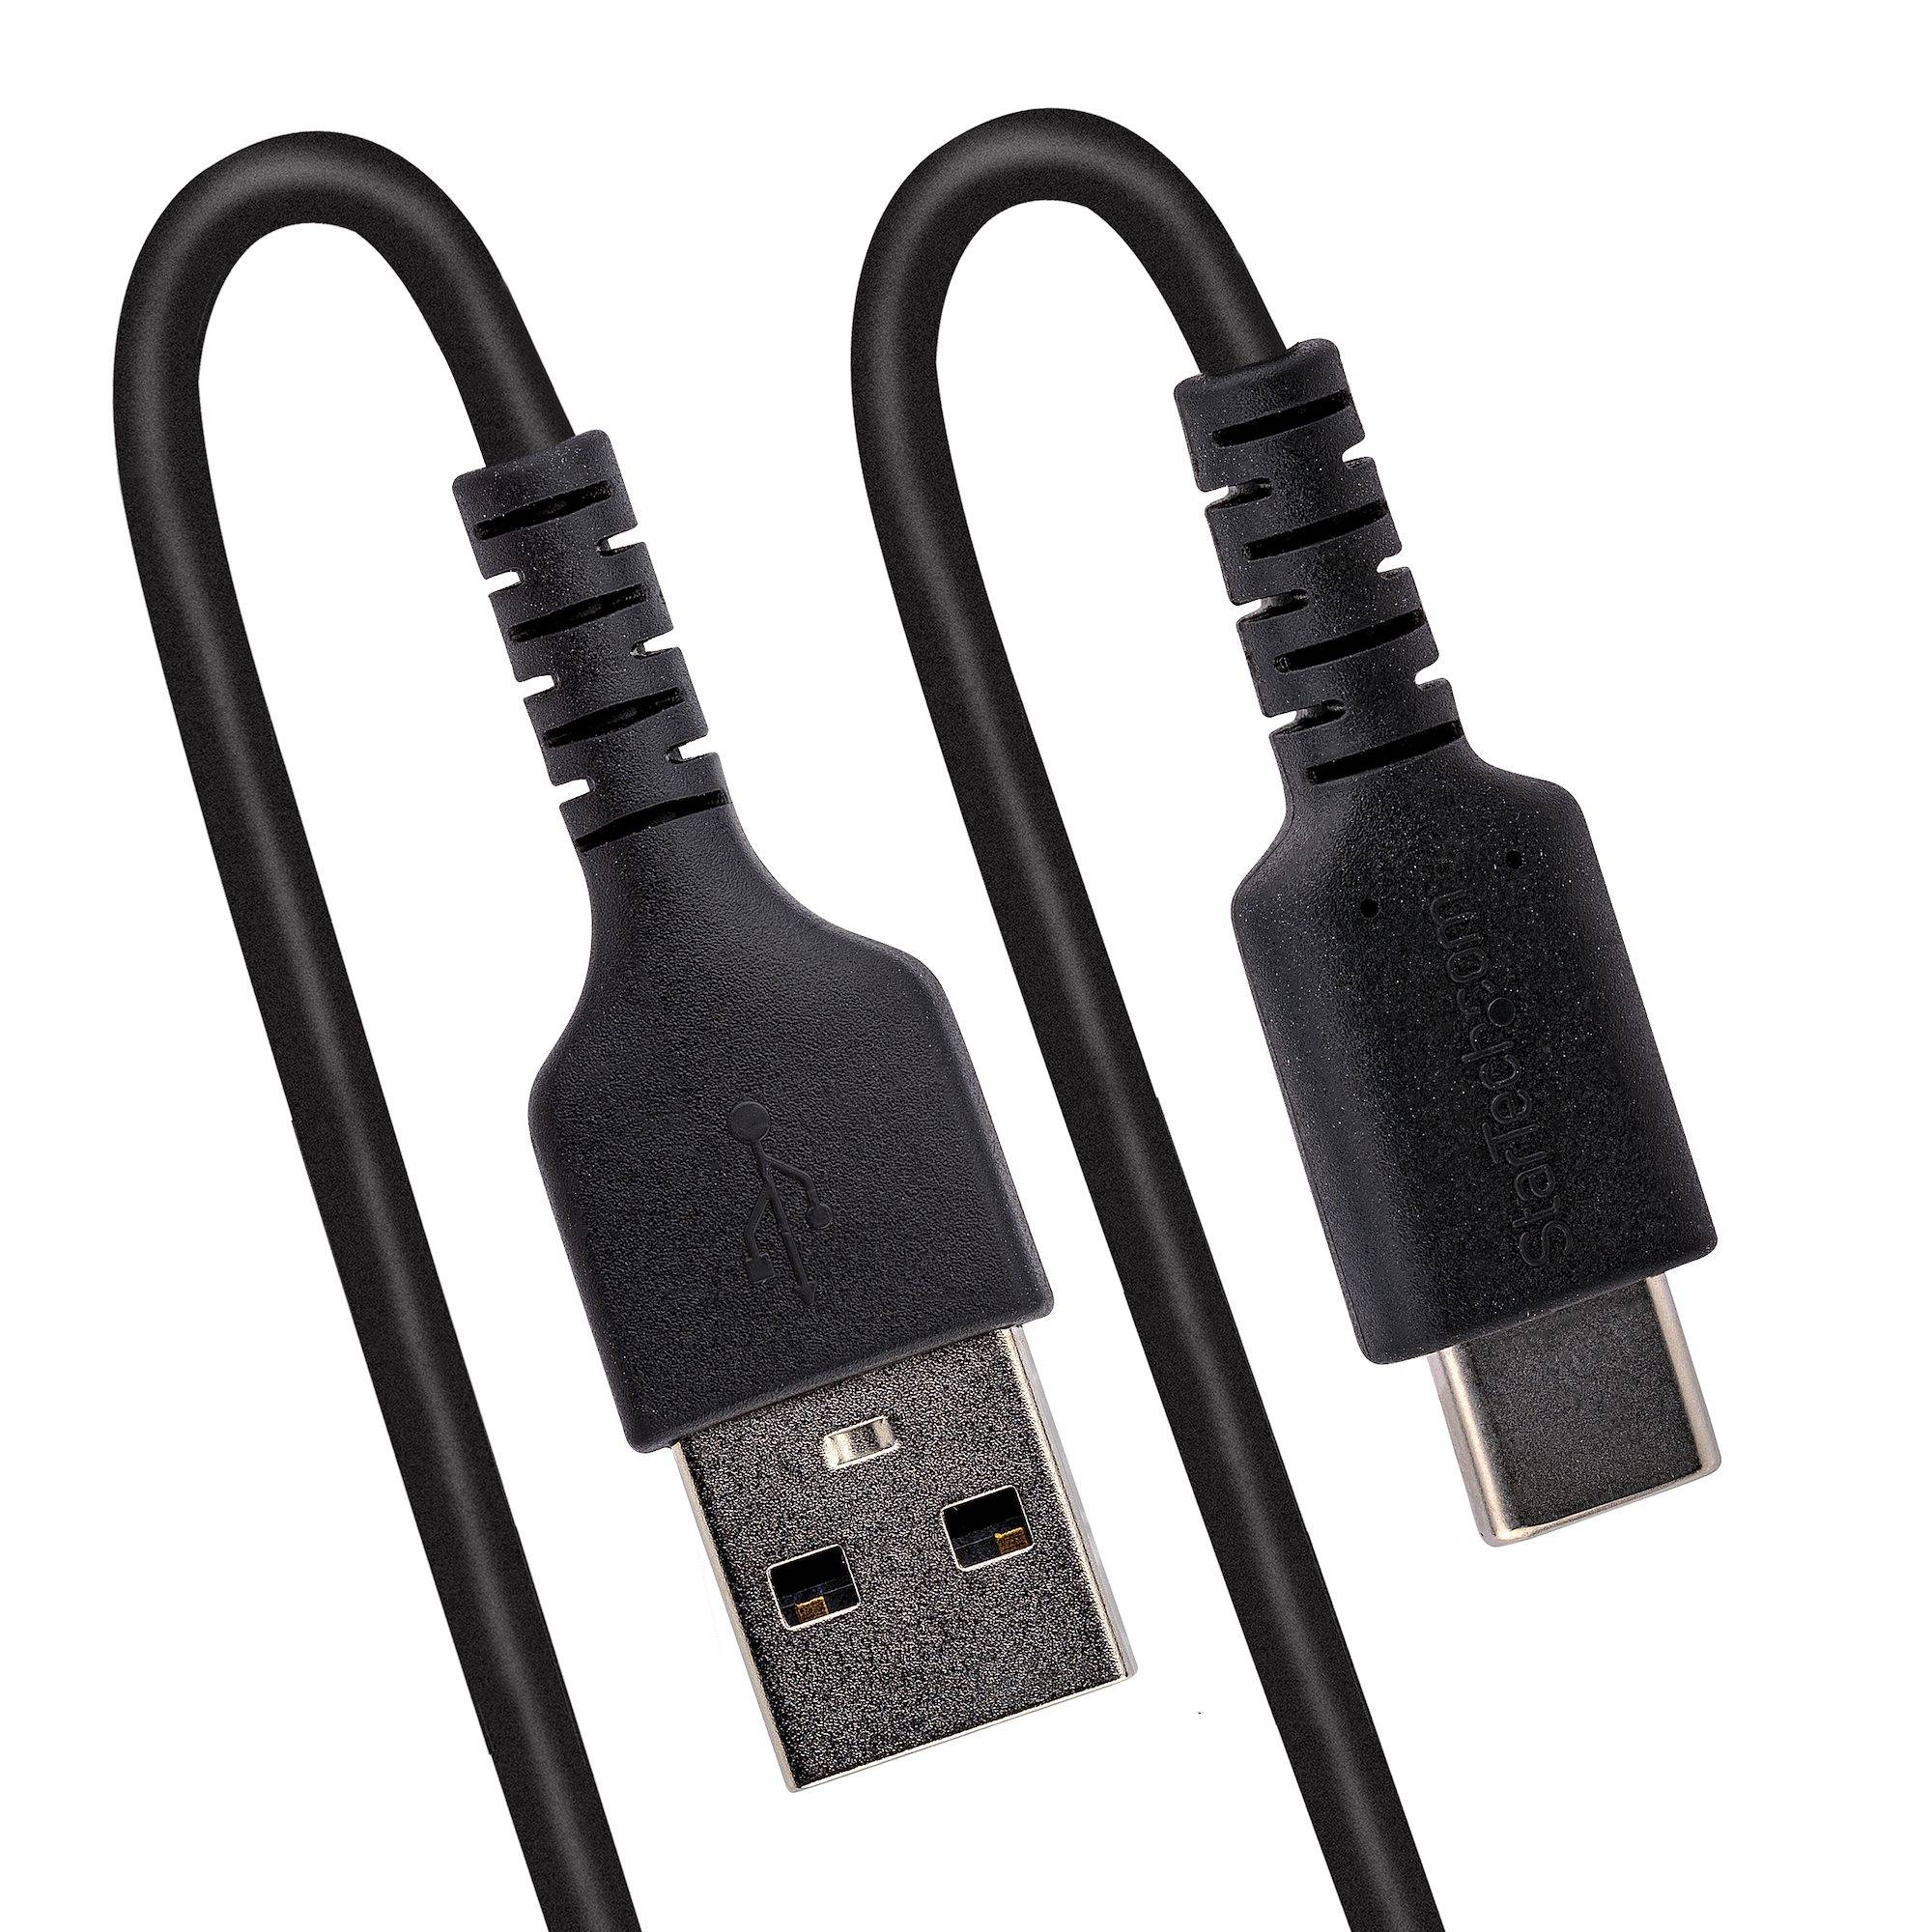 Rca Informatique - image du produit : CABLE USB VERS USB-C DE 1M - C ORDON USB-A A USB-C M/M - NOIR